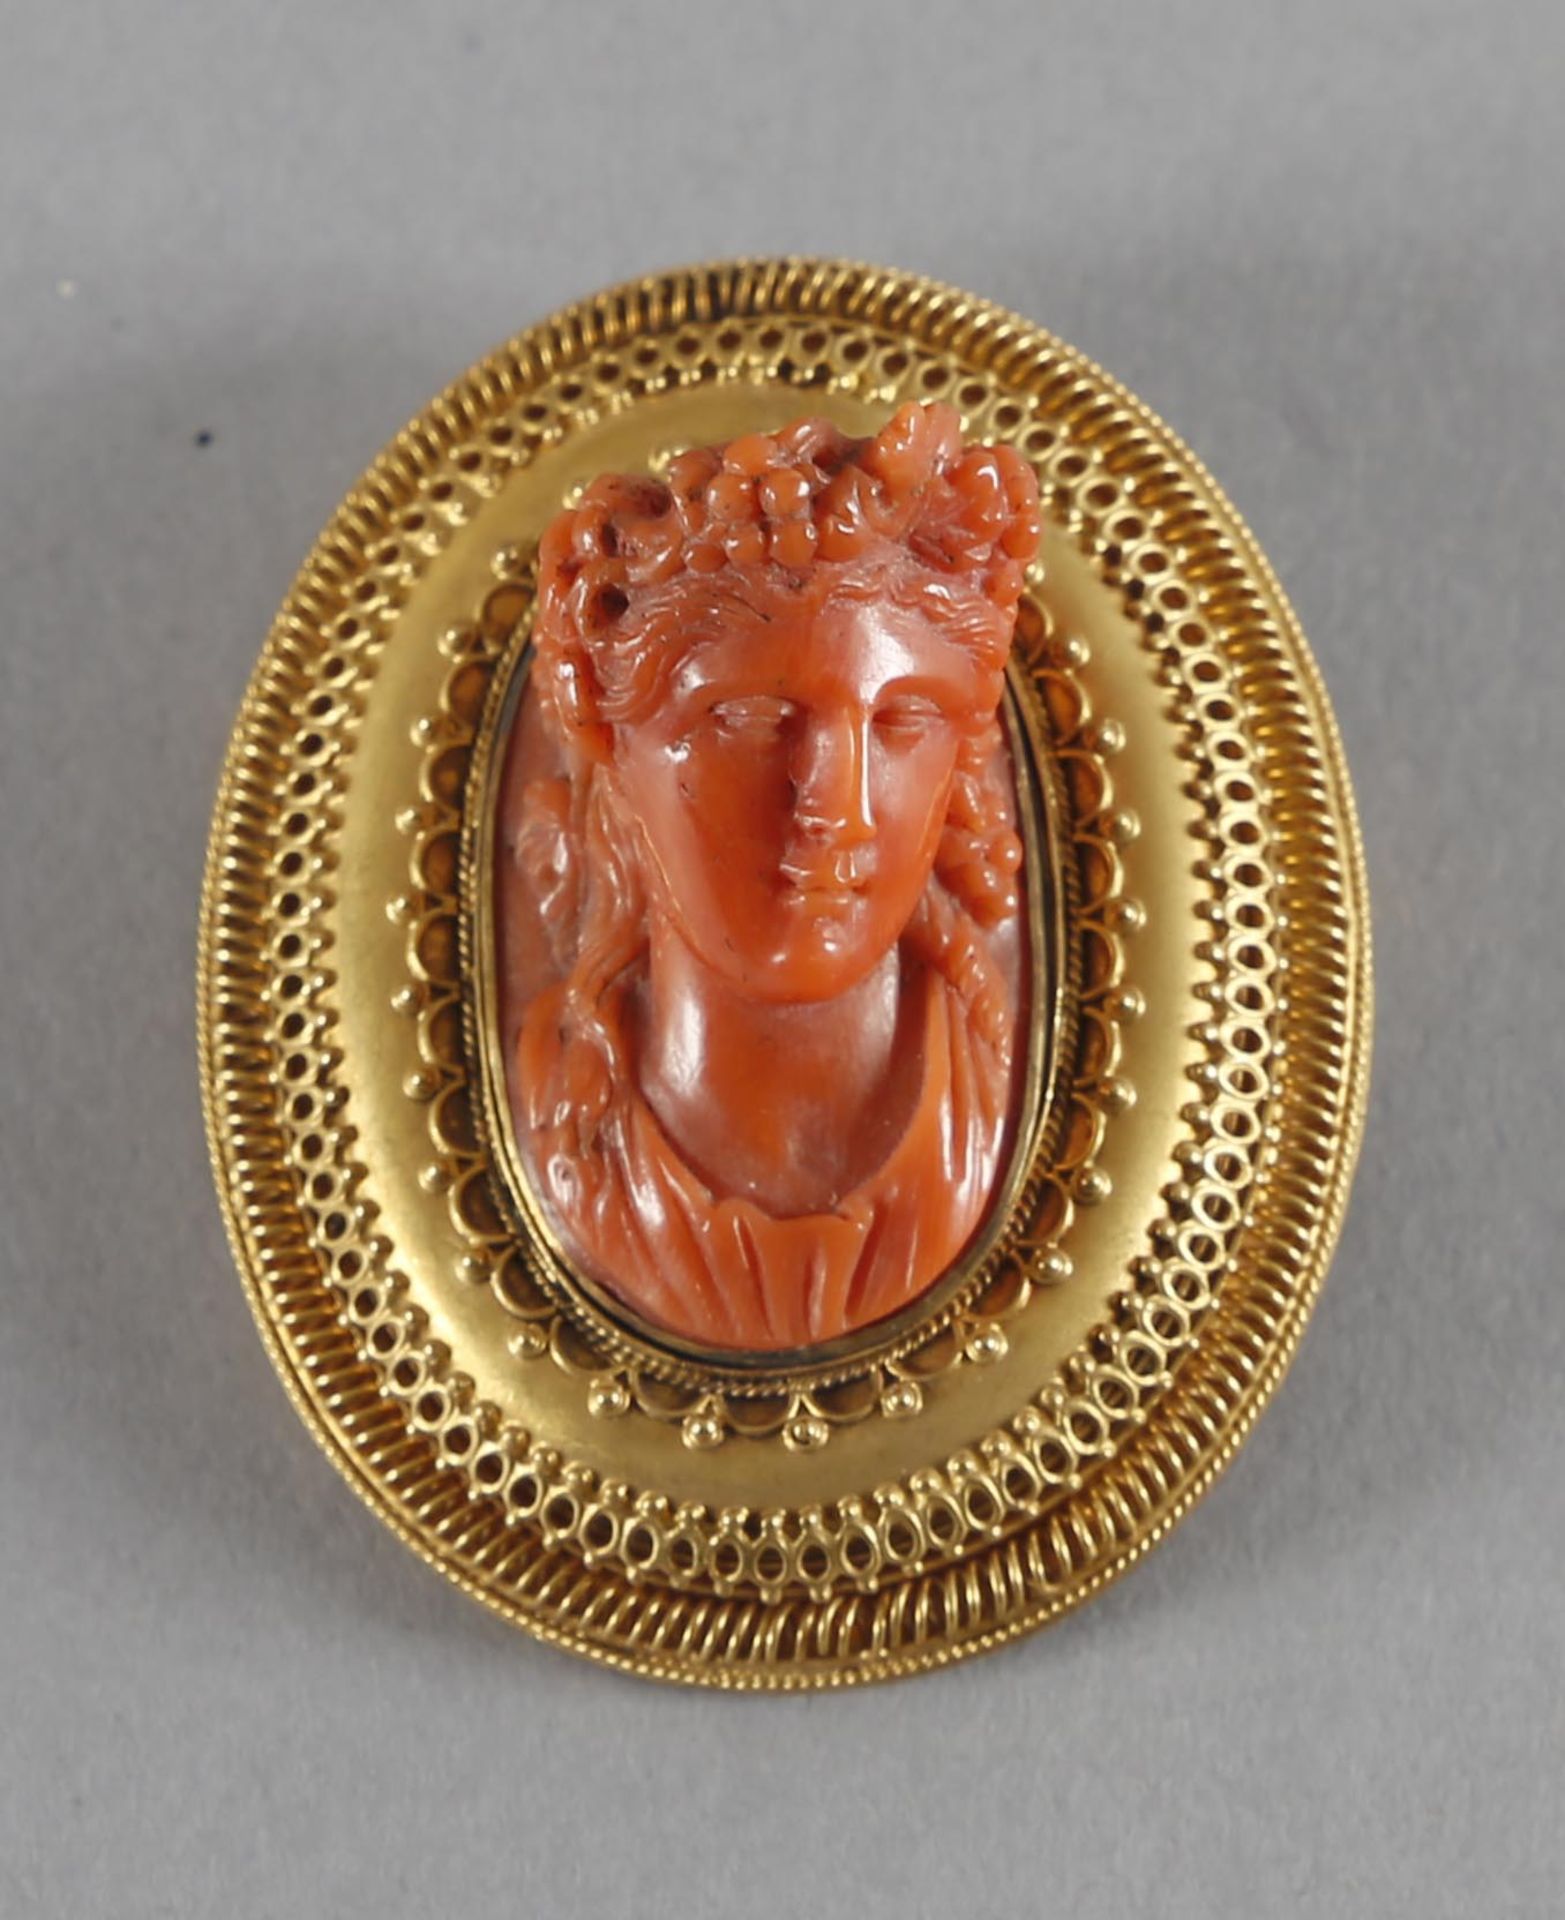 Fein verzierte Brosche aus 18 kt Gold, antikisierende Frauenbüste mit Weinlaub im Haar, rote